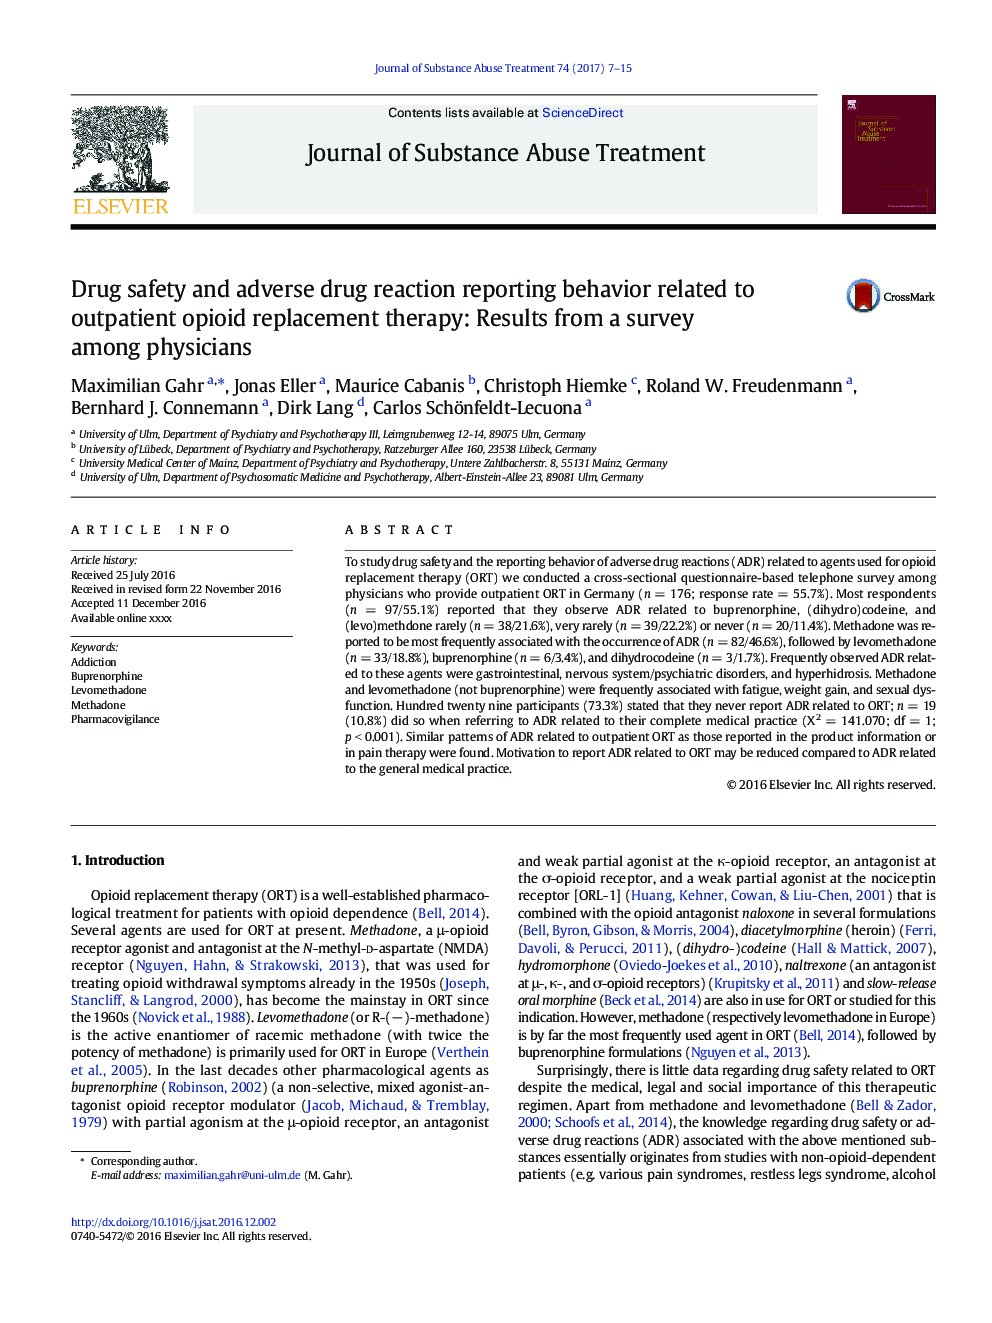 ایمنی مواد مخدر و رفتارهای گزارش شده در مورد واکنش های ناشی از مواد مخدر مربوط به درمان جایگزینی سرپایی سرپایی: نتایج حاصل از یک نظرسنجی در میان پزشکان 